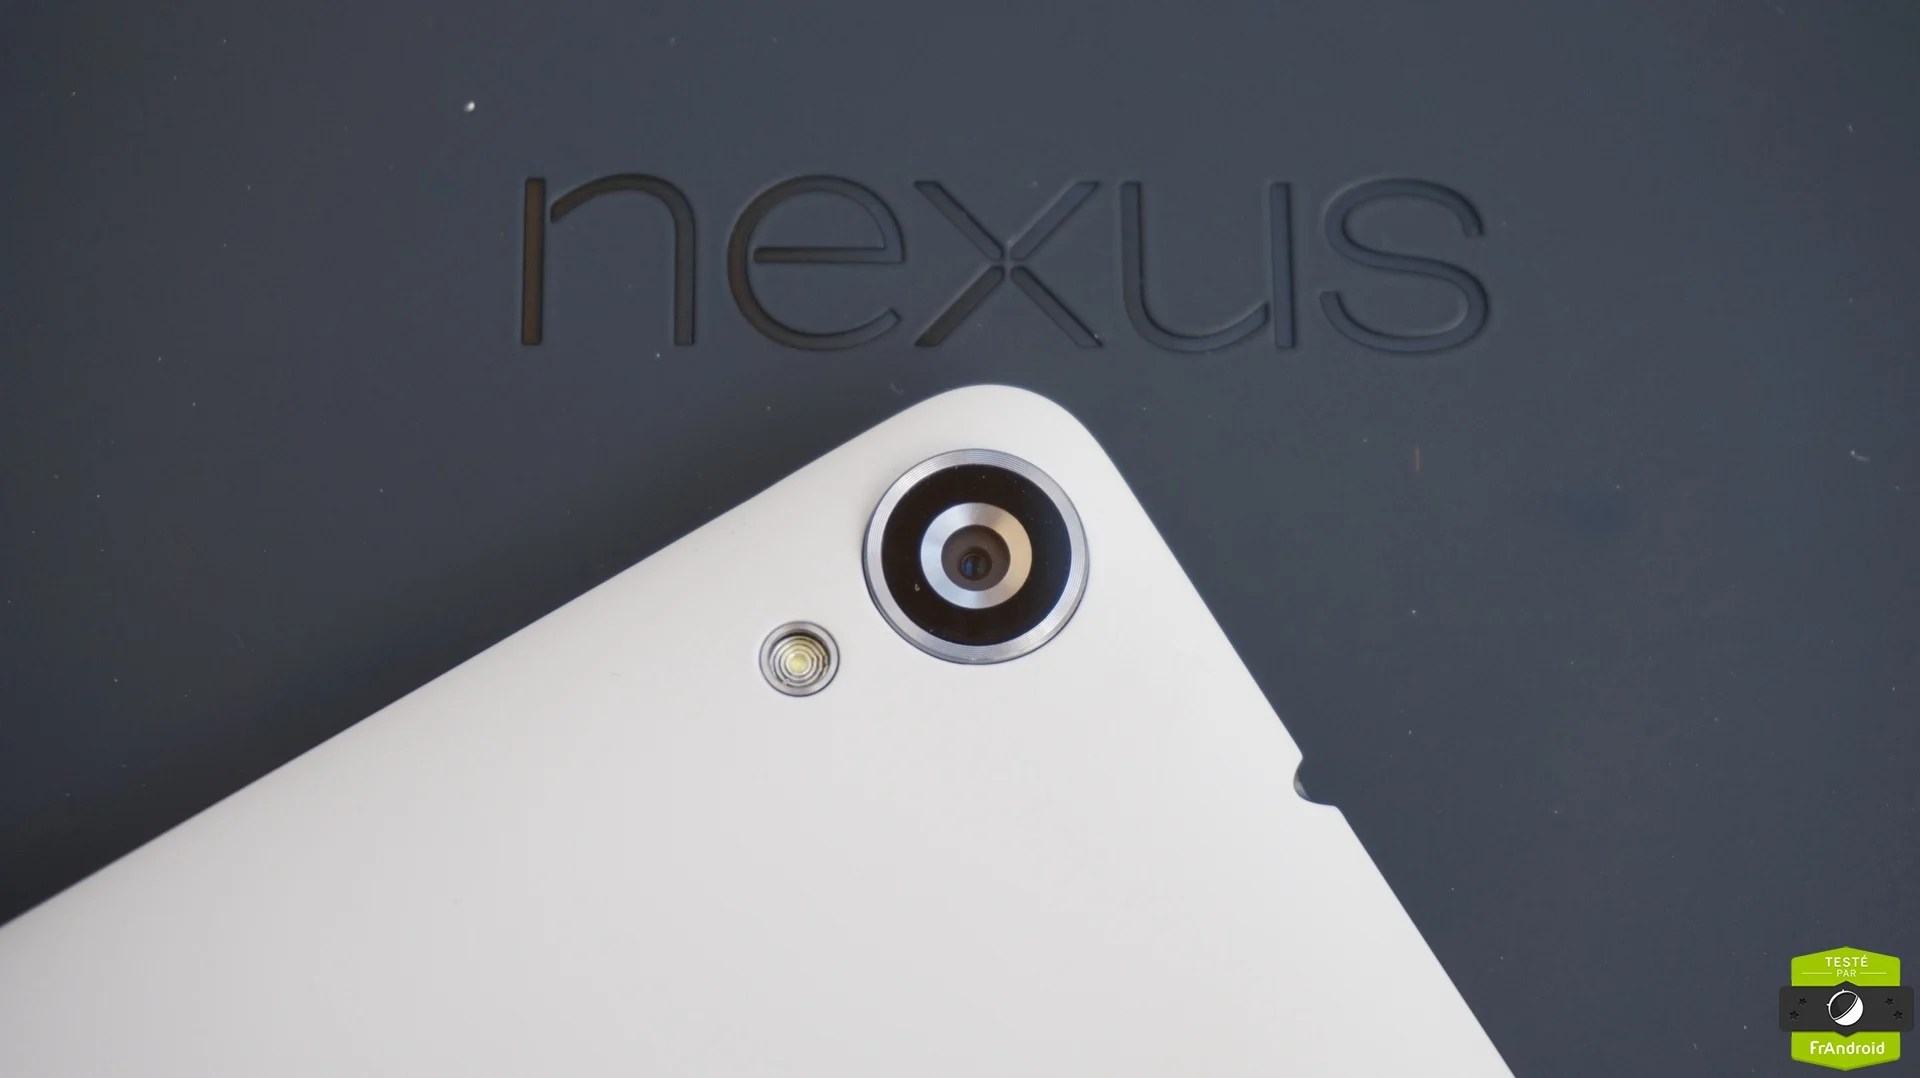 Nexus-905